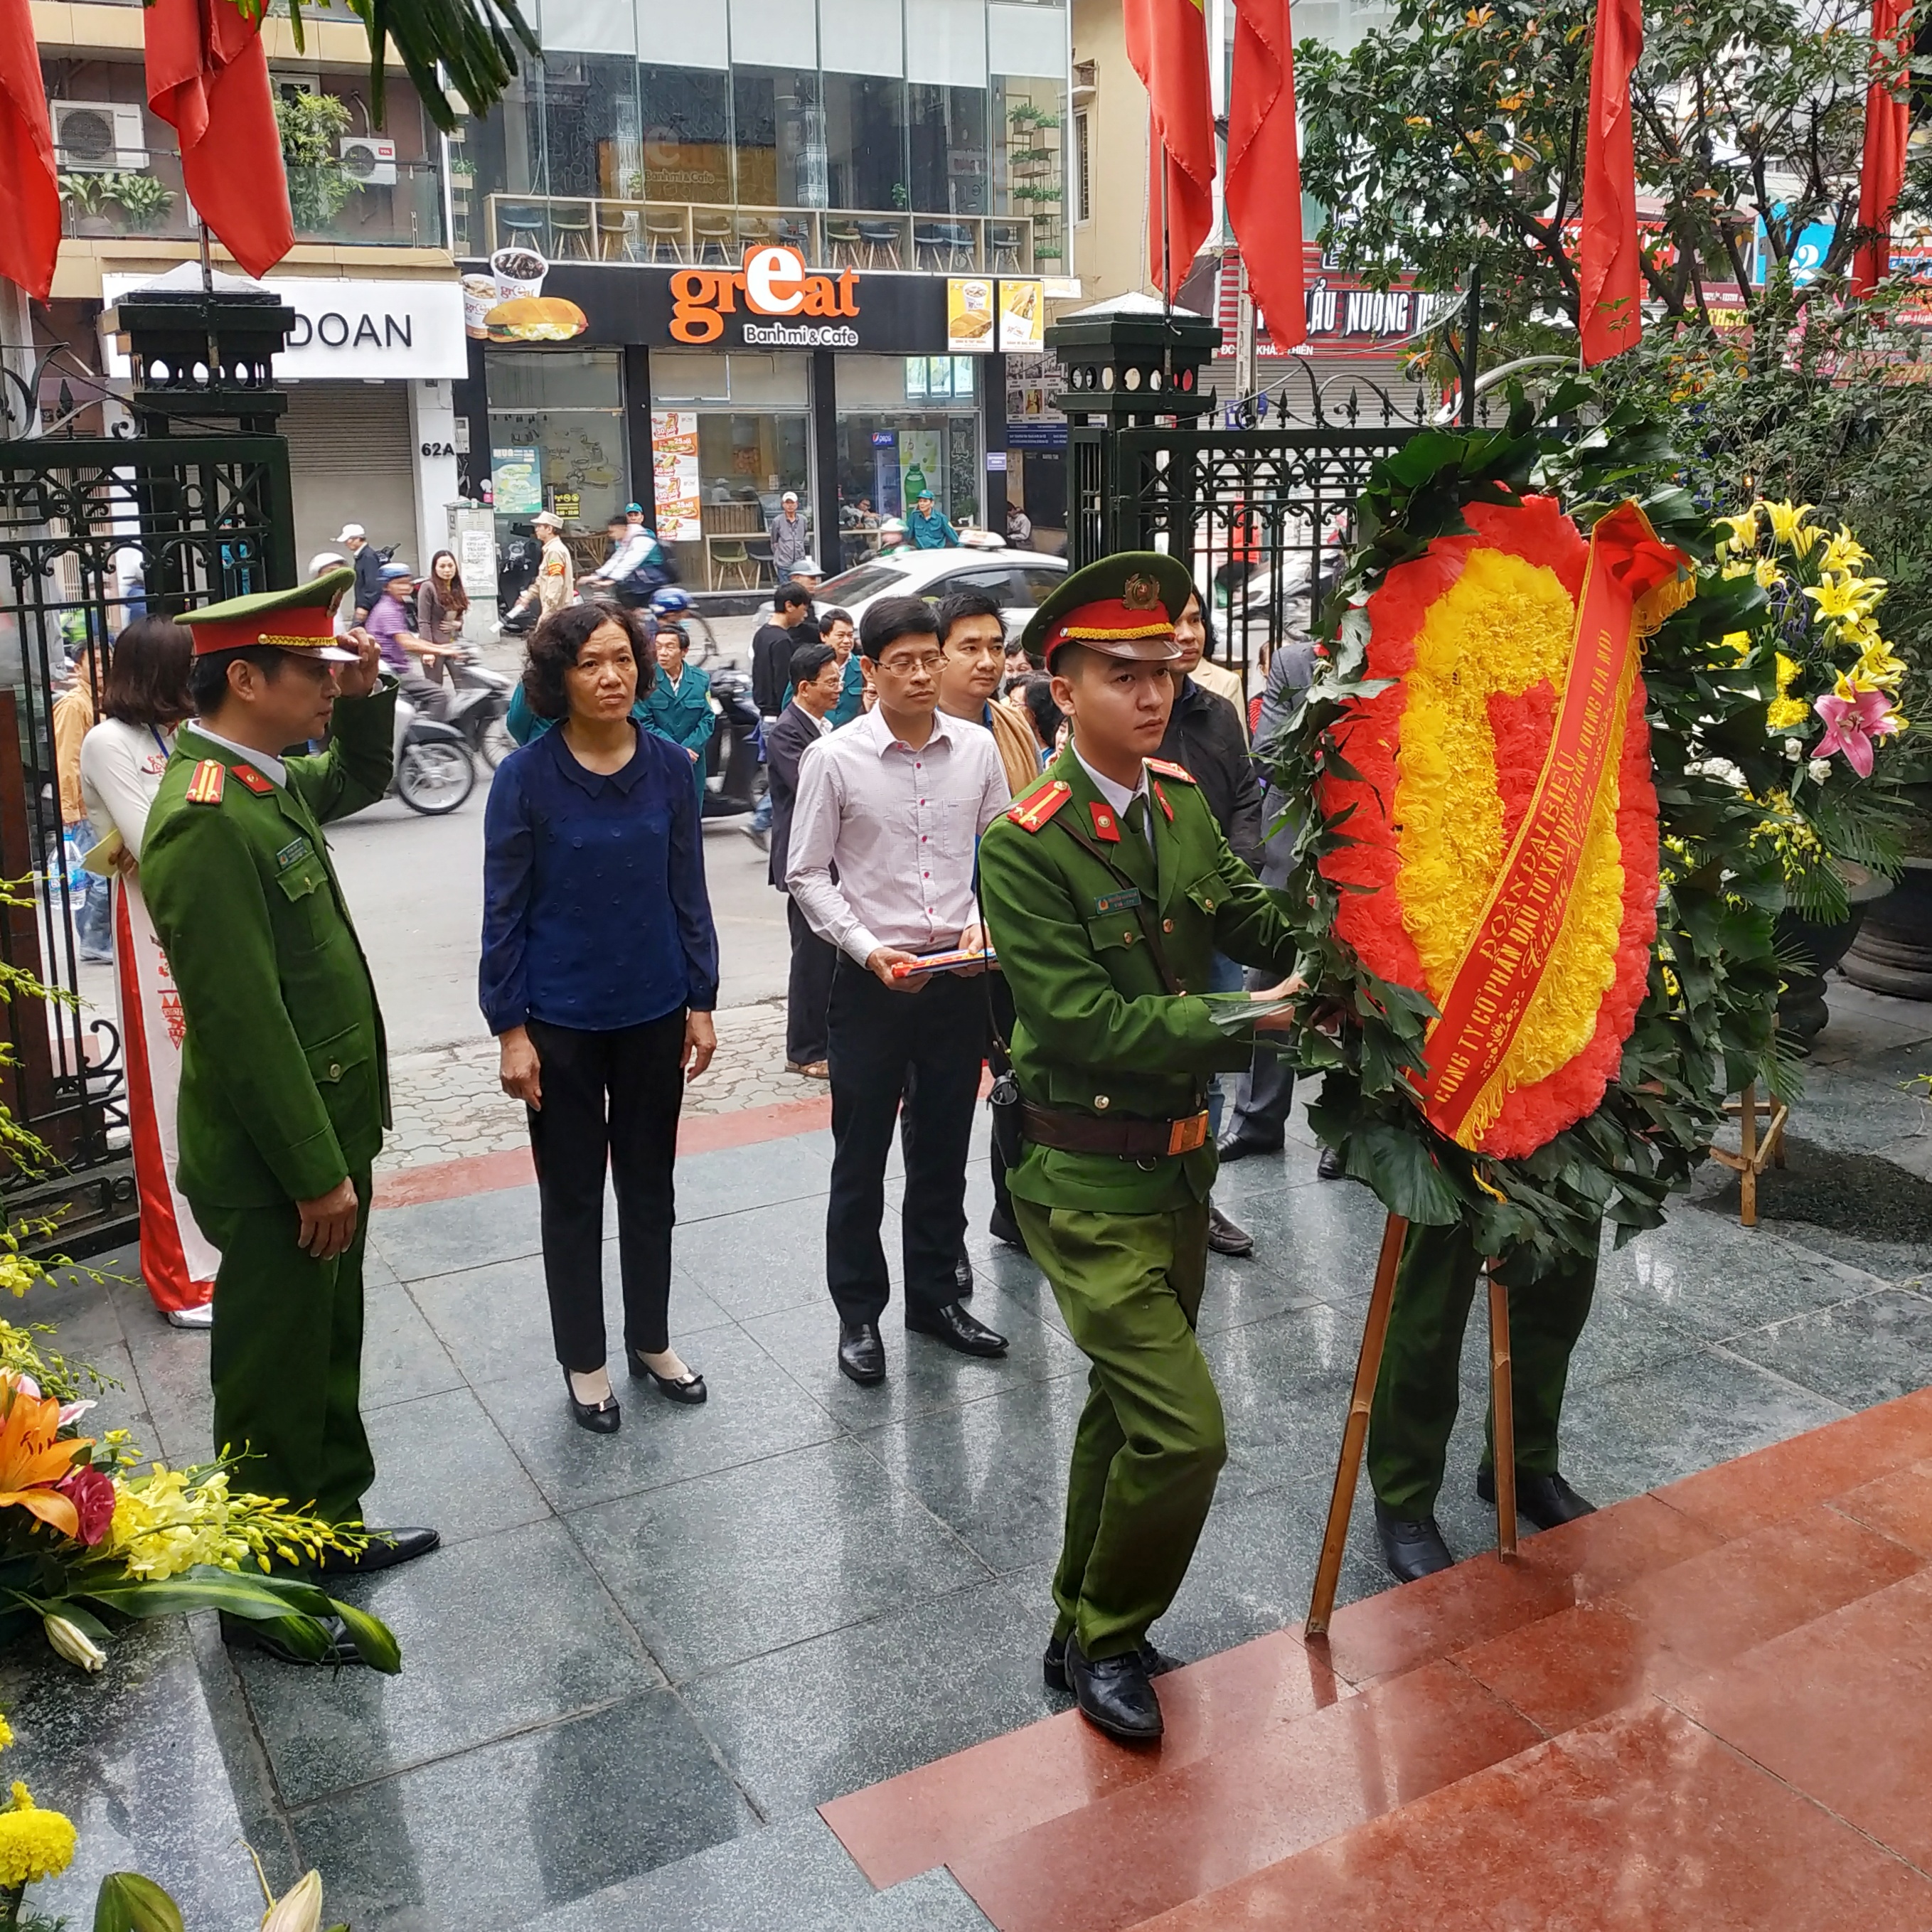 Dâng hương tưởng niệm đồng bào bị bom Mỹ sát hại tại Khâm Thiên